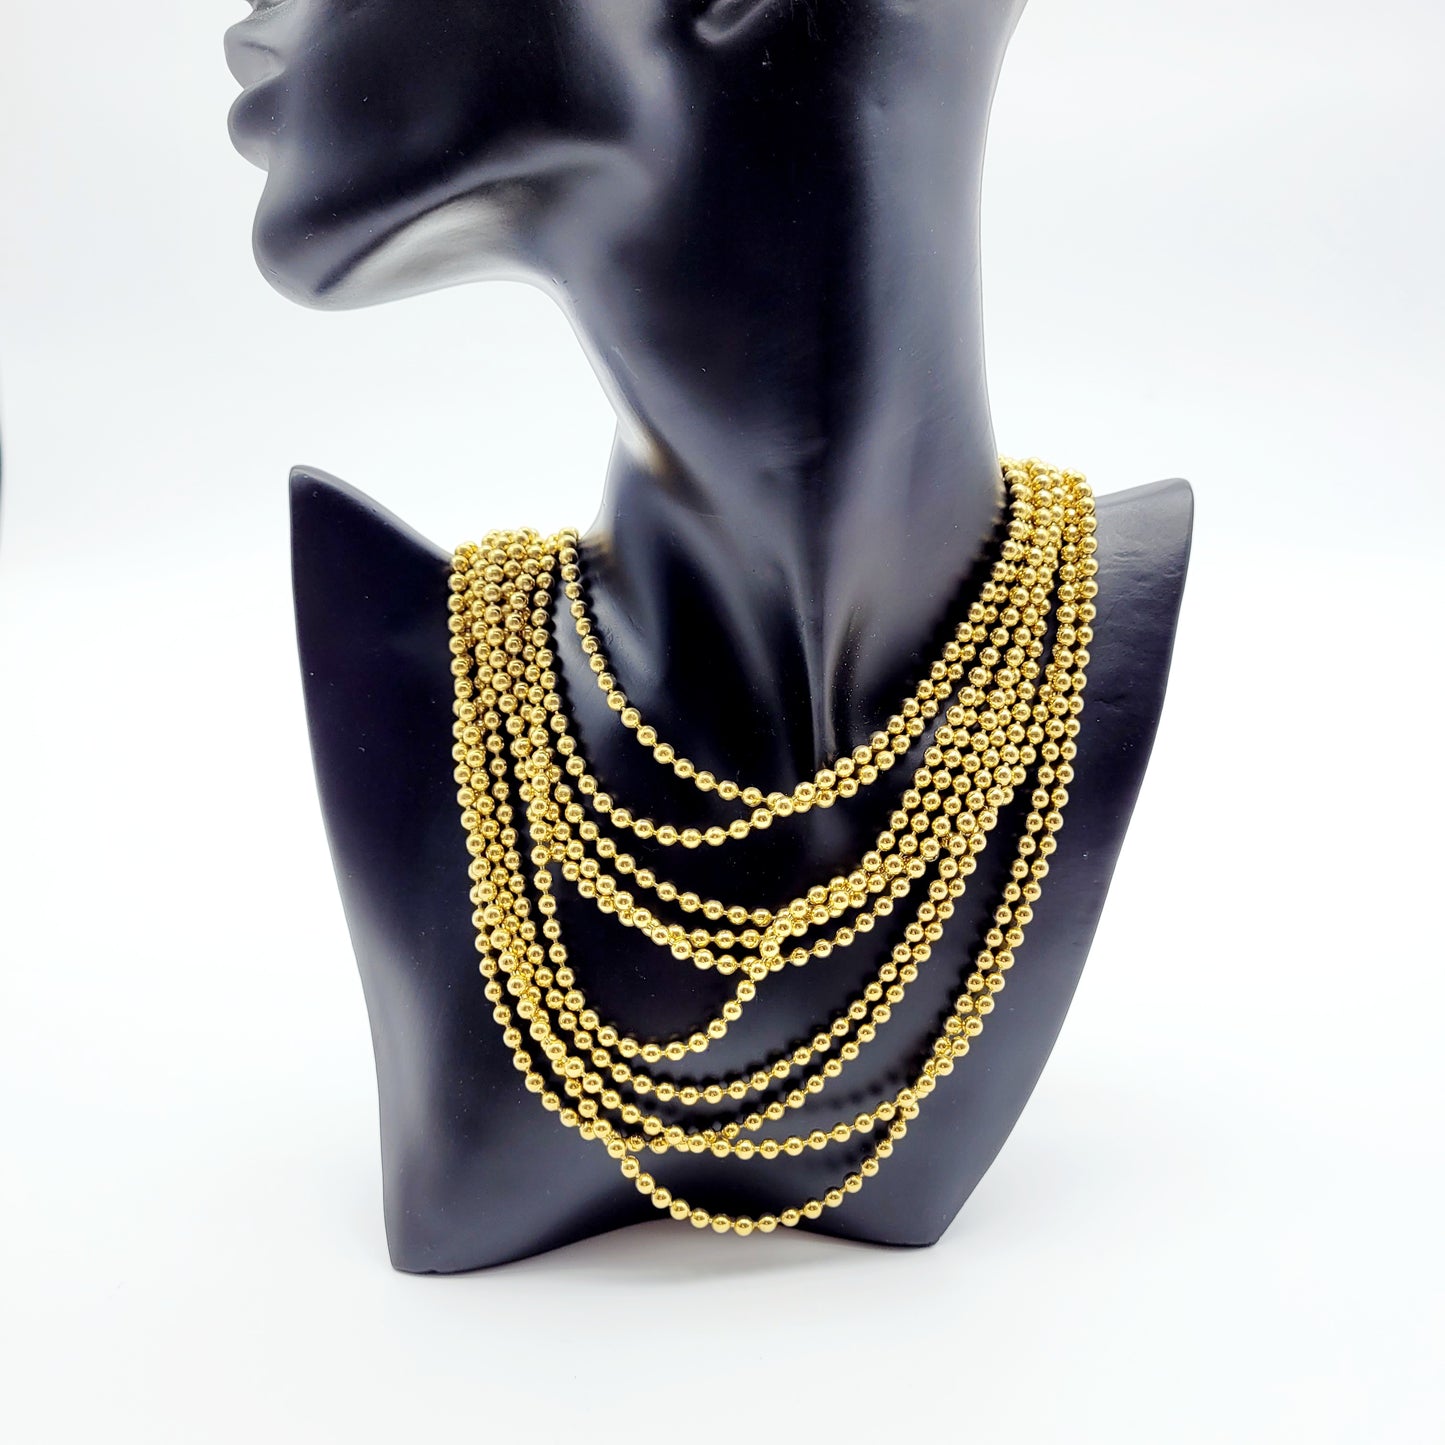 Vintage Yves Saint Laurent necklace